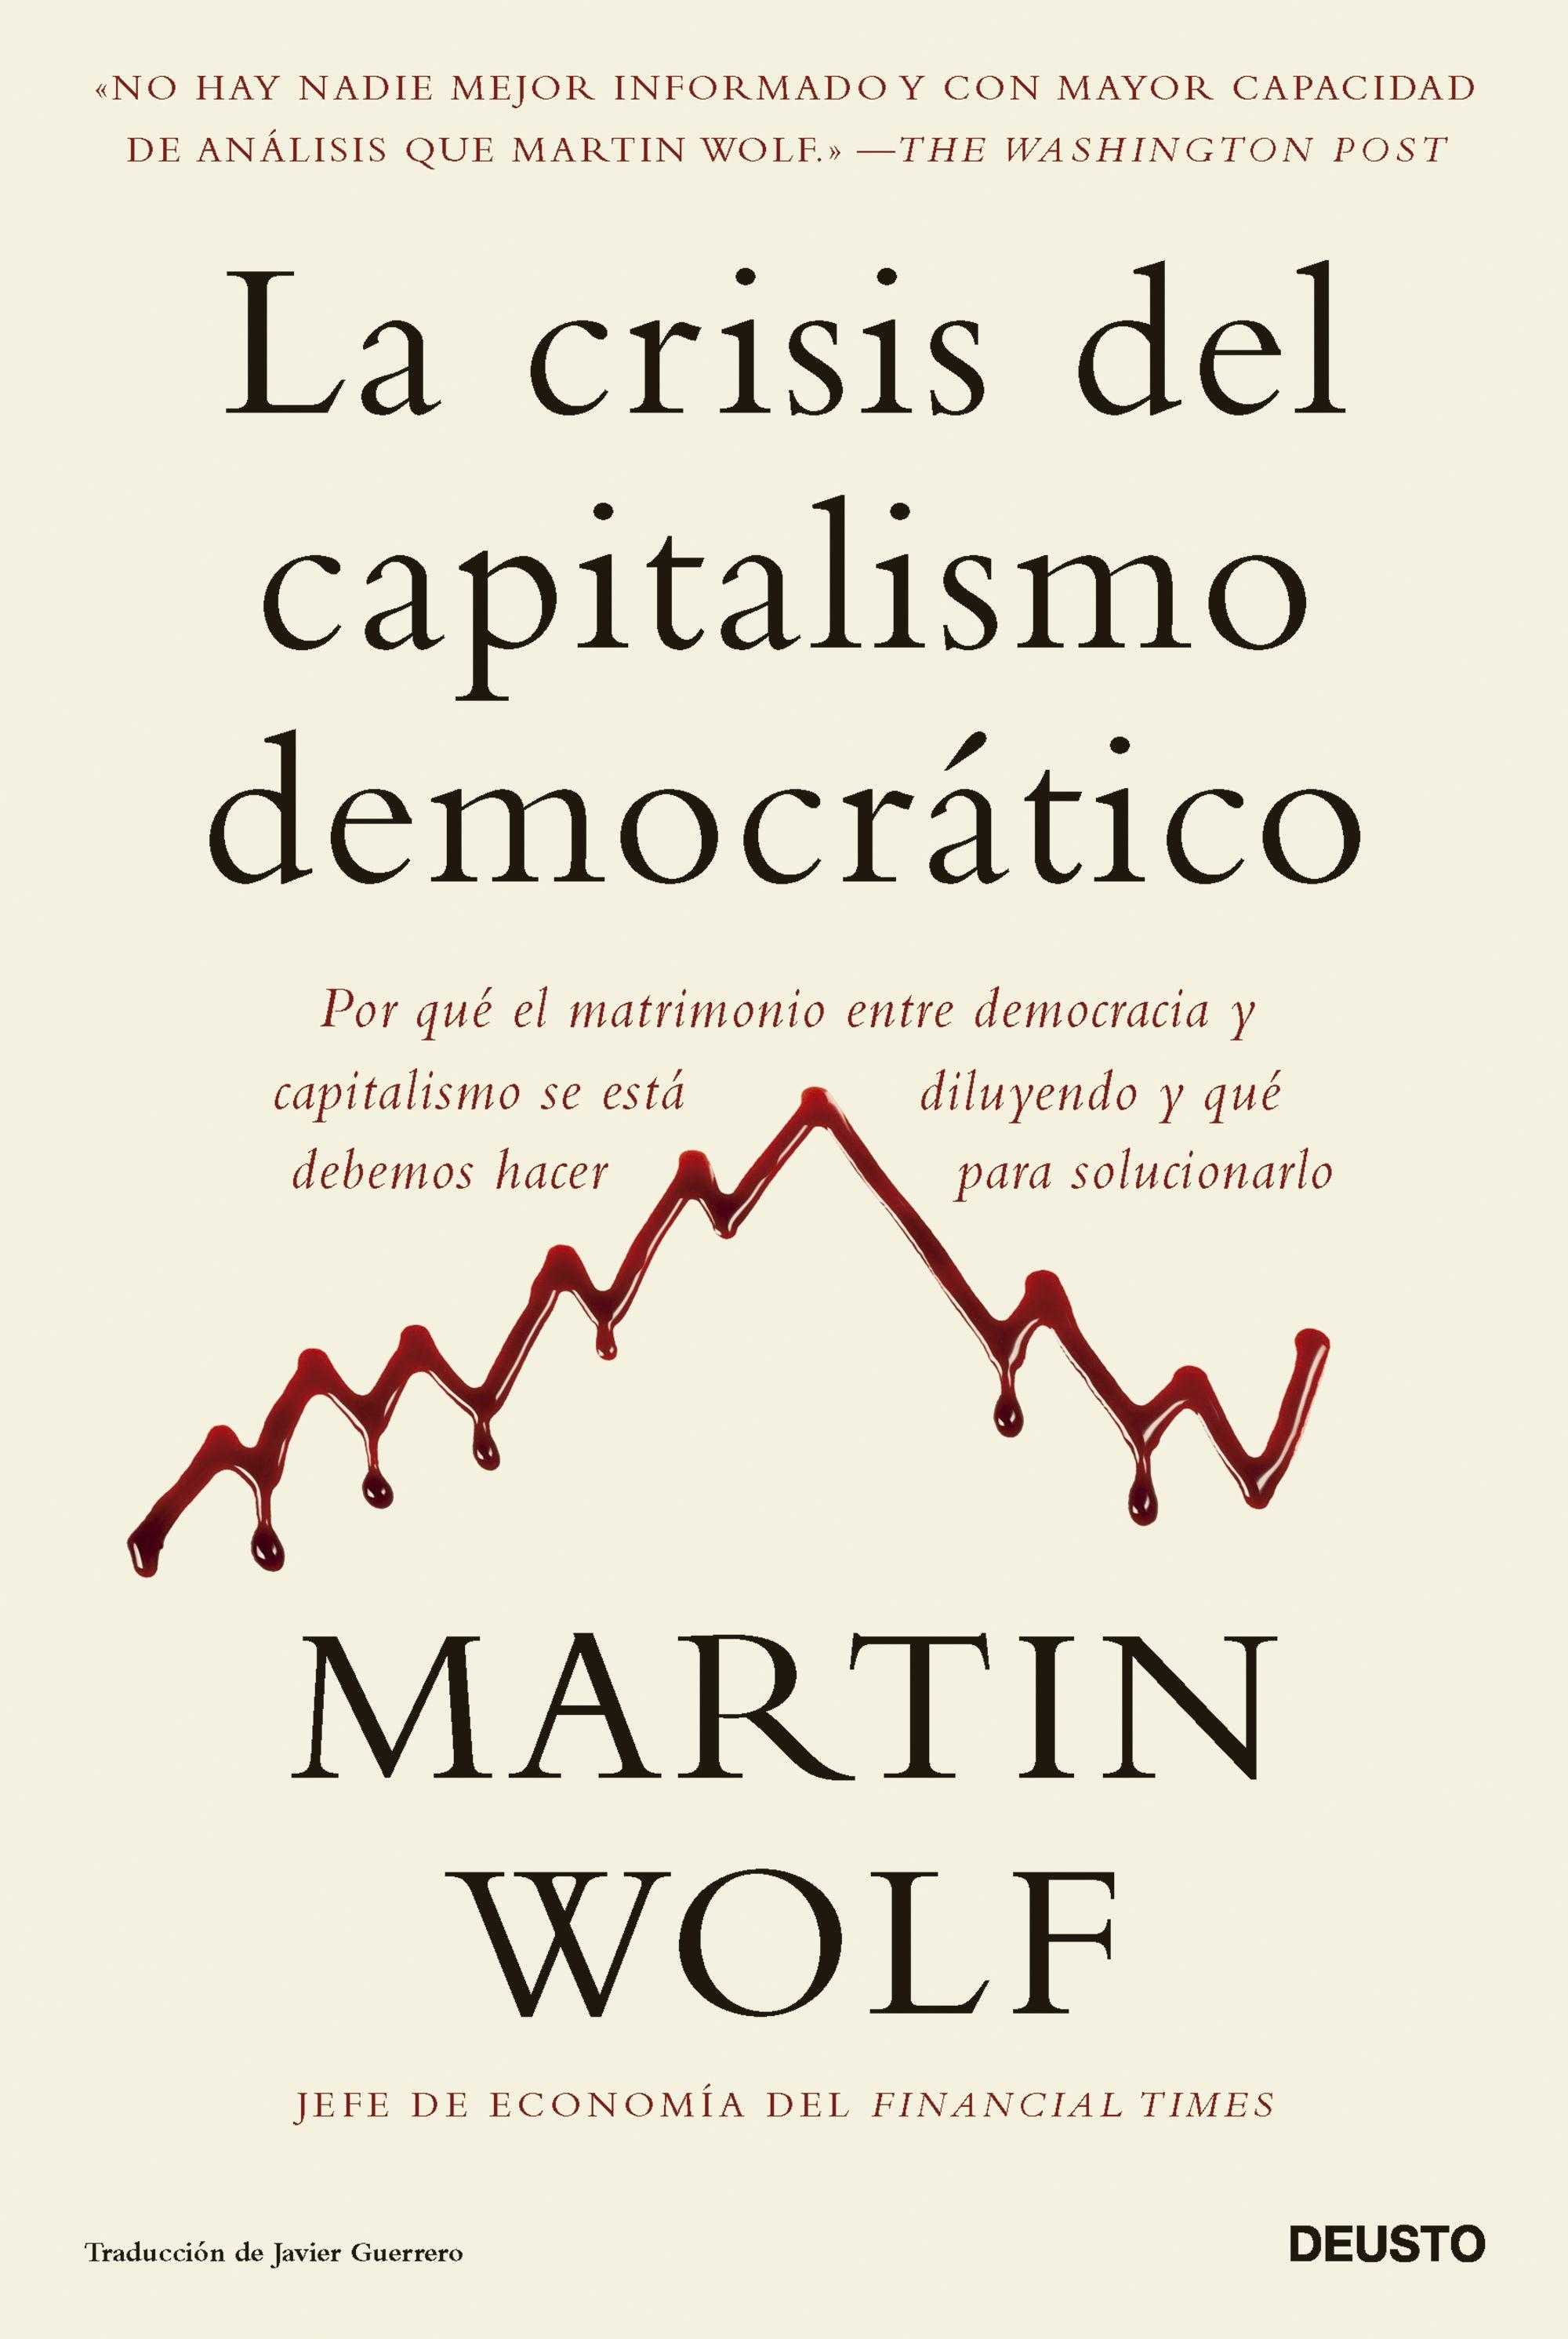 La crisis del capitalismo democrático "Por qué el matrimonio entre democracia y capitalismo se está diluyendo y"